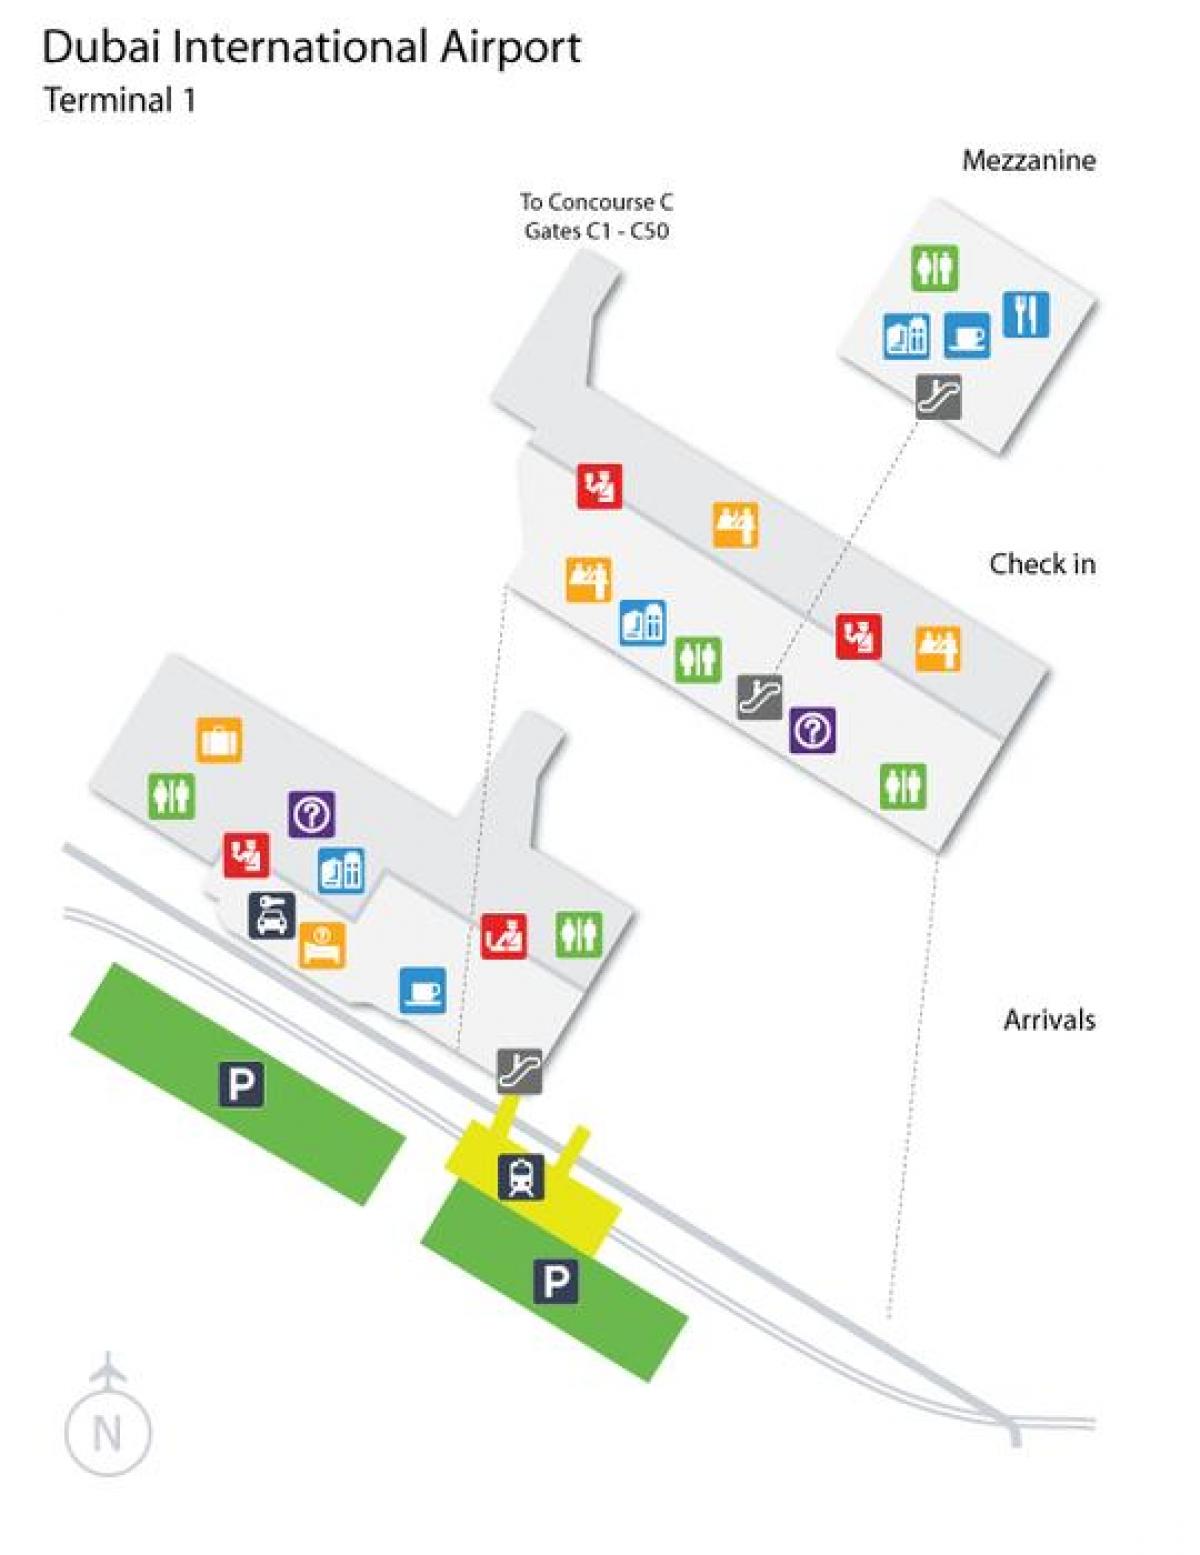 Dubai airport terminal 1 atrašanās vietu kartē